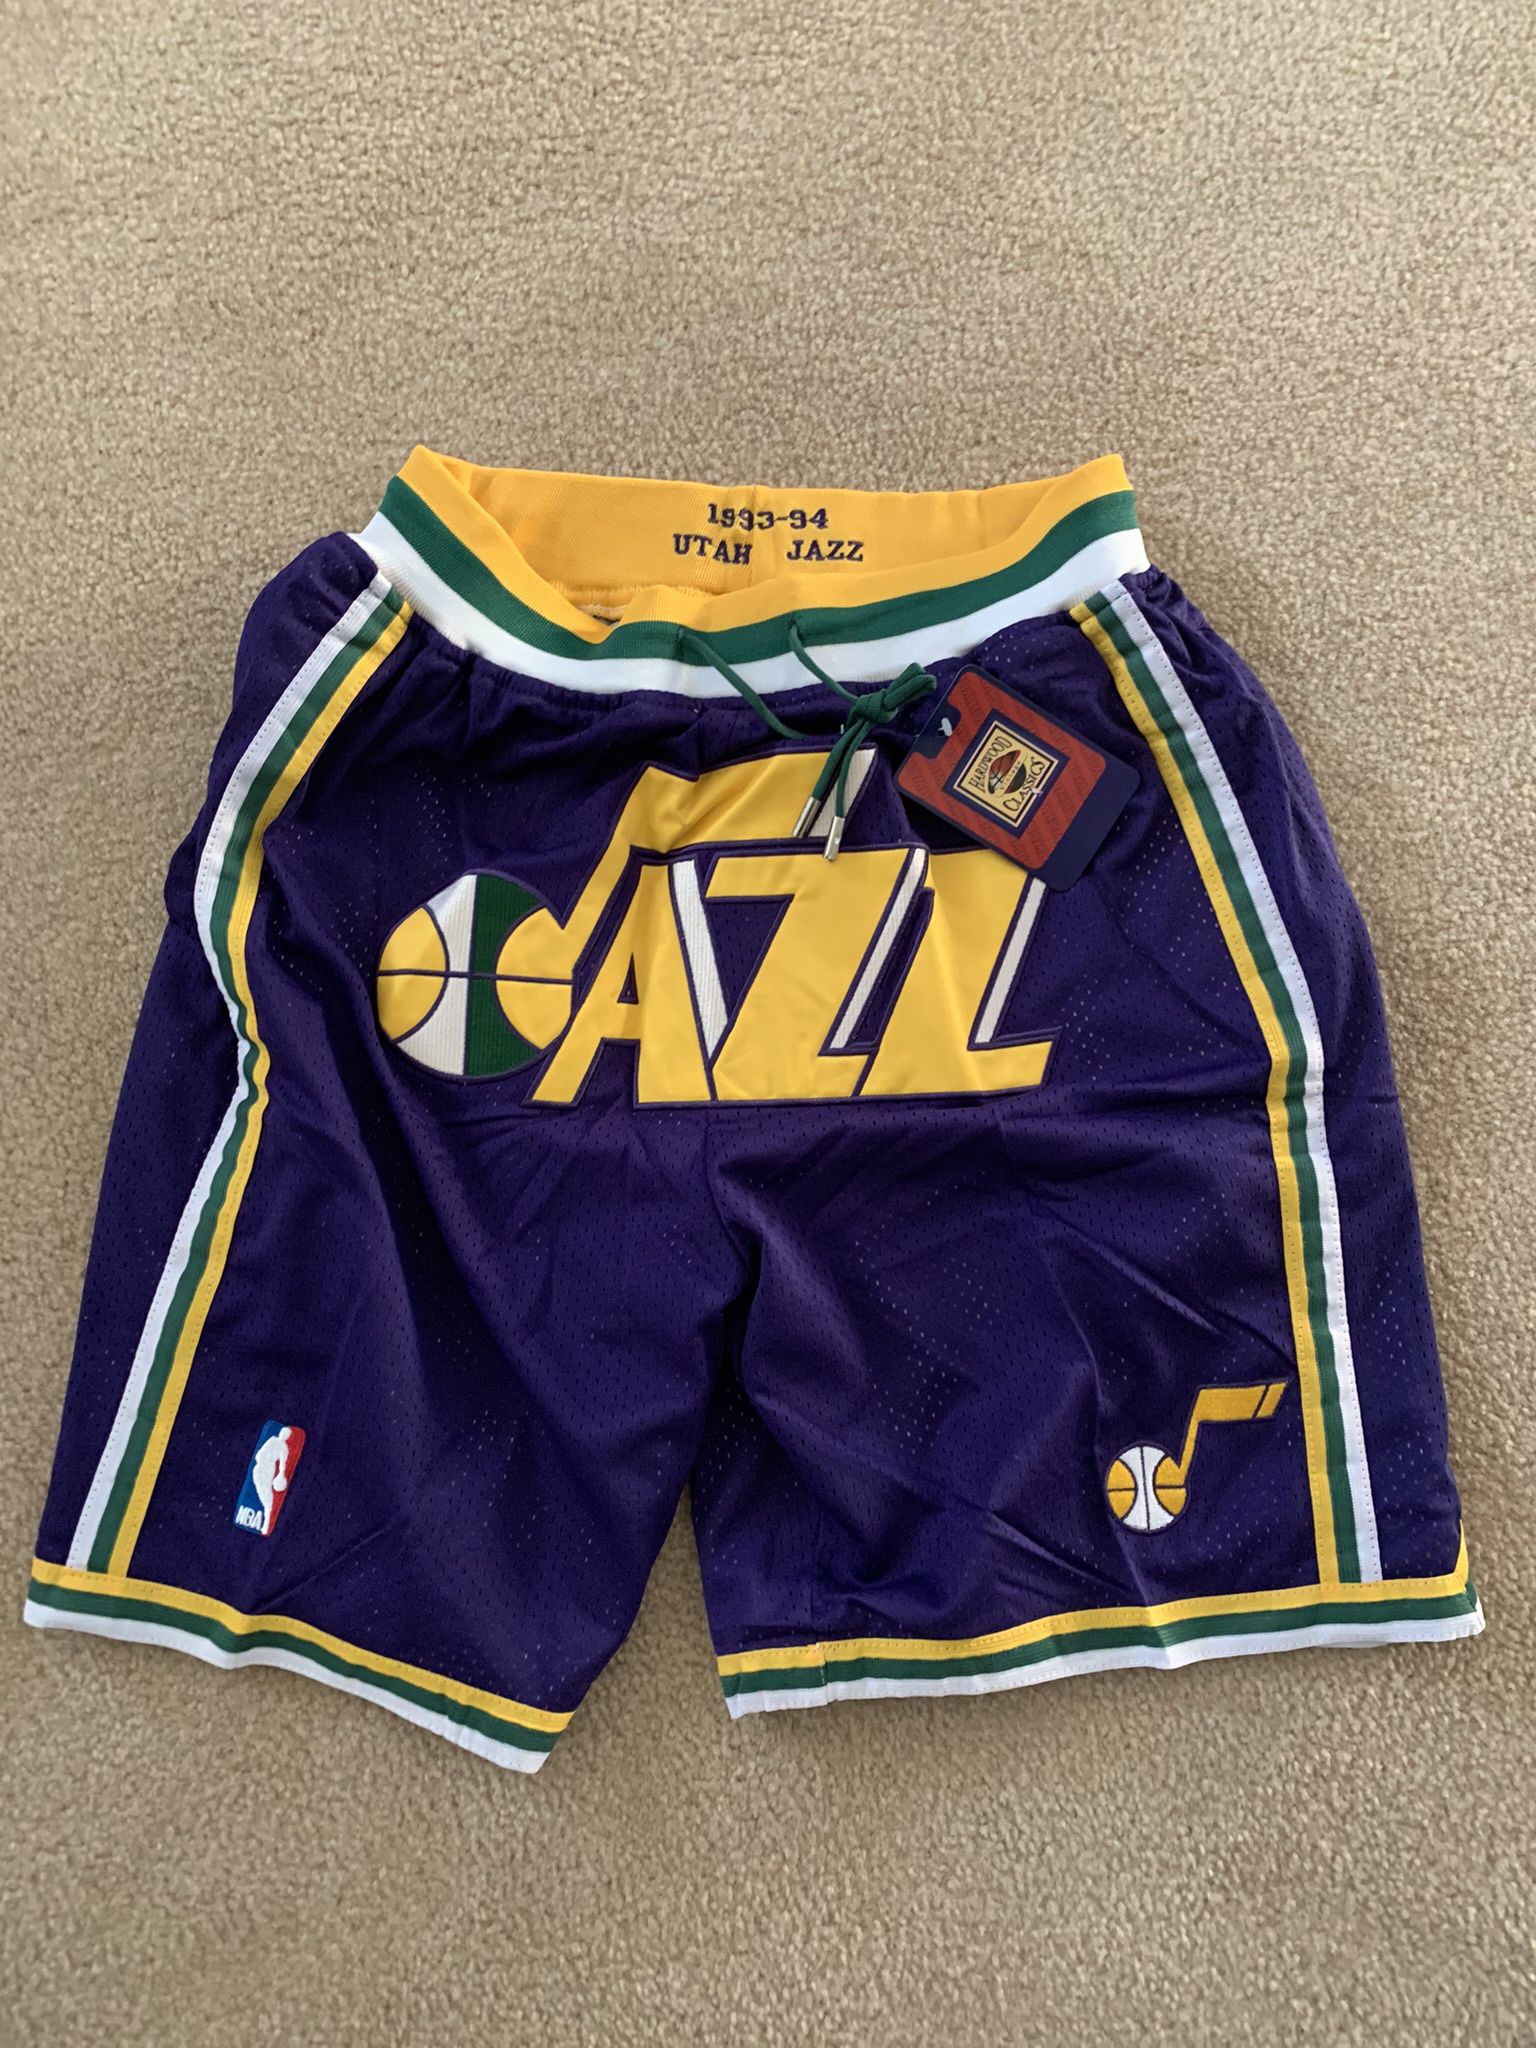 Utah Jazz Short